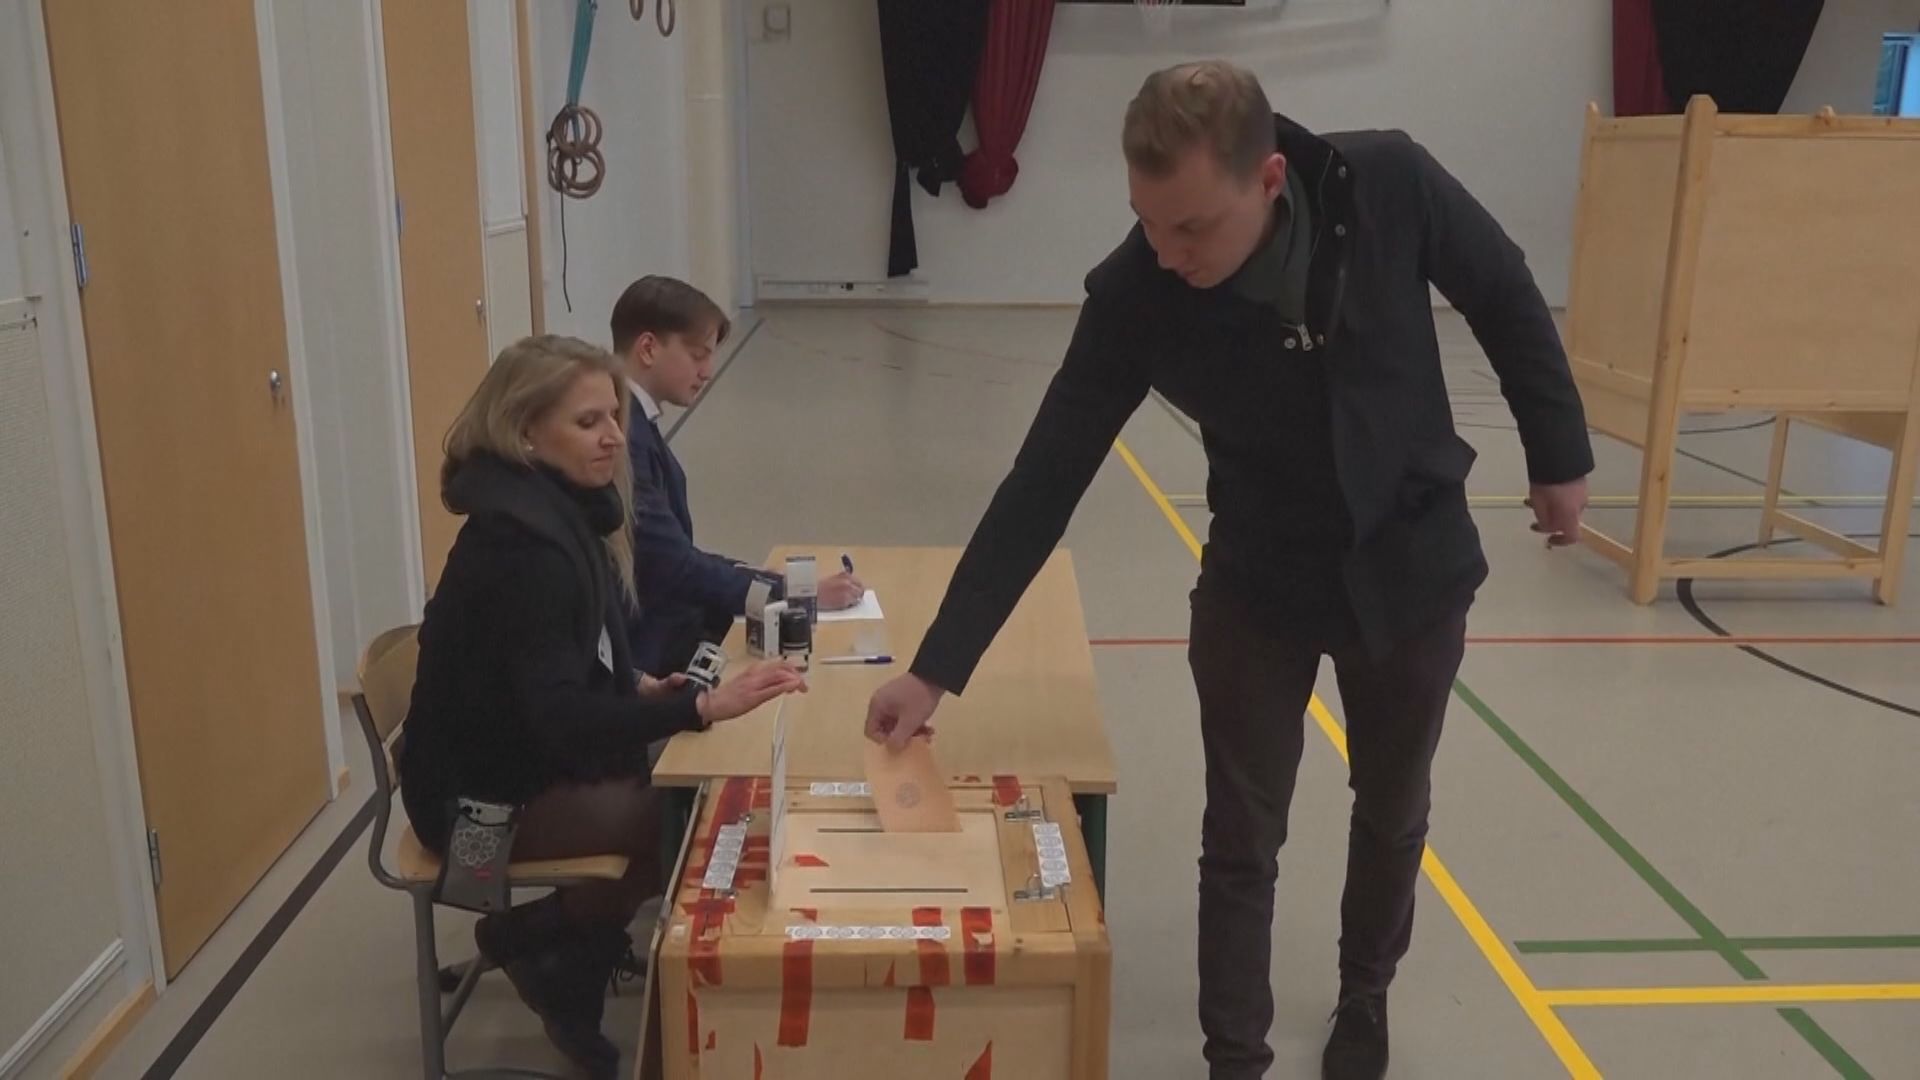 芬蘭總統選舉次輪投票 北約議題成焦點